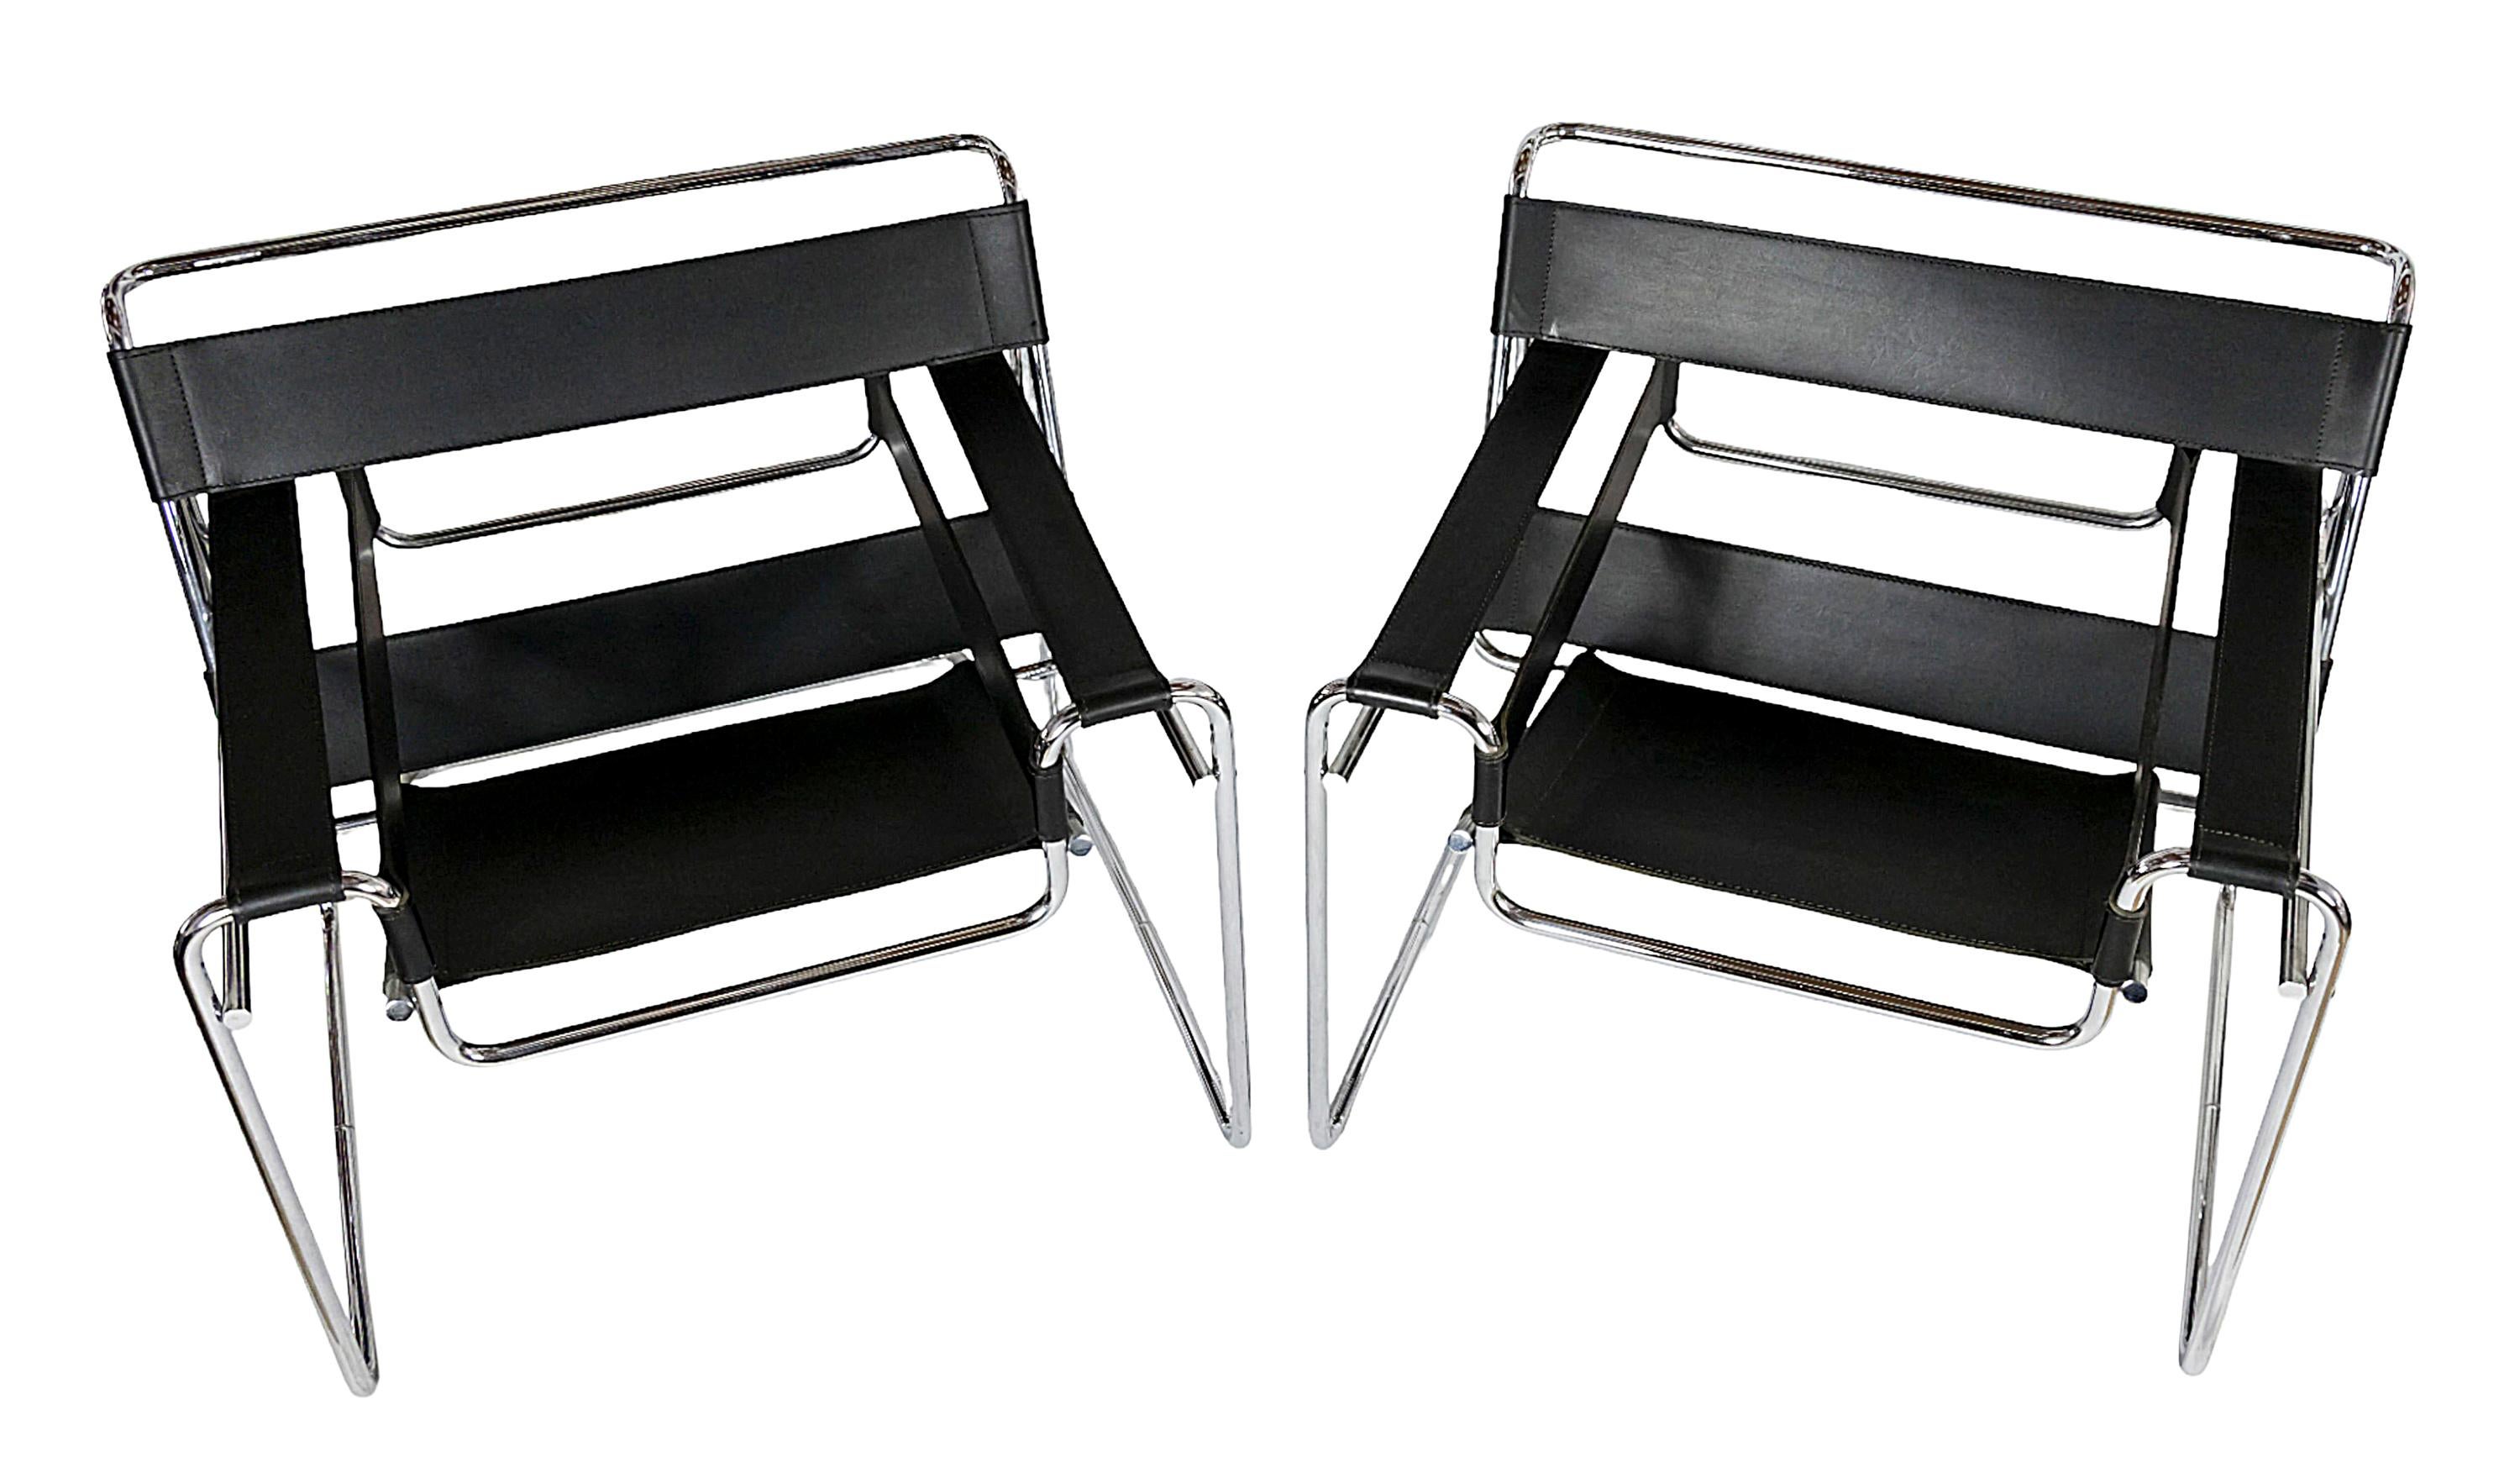 Ein Paar Wassily-Sessel, entworfen von Marcel Breuer, um 1925.
Herstellungsdatum 2003 von Knoll Studio.
Knoll Studio auf dem Rahmen gestempelt und mit einem Label versehen.
Aus schwarzem Leder, Gestell aus verchromtem Stahlrohr.
In sehr gutem